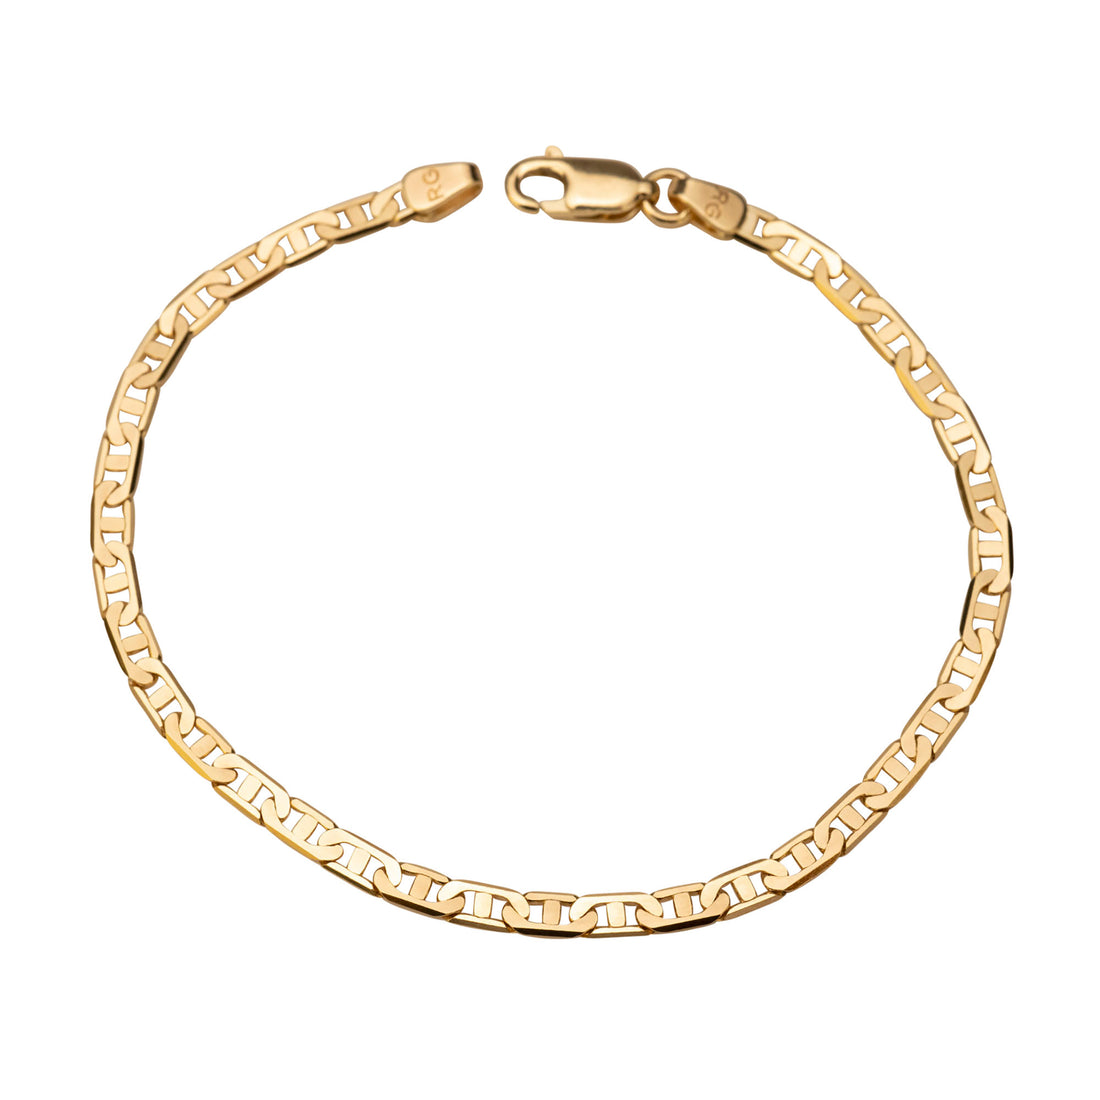 14k Gold Flat Gucci Bracelet, 14k Solid Gold Bracelet, Italian Gold Bracelet, Chain and Link Bracelet, Bracelet, Chain Bracelet, Holiday